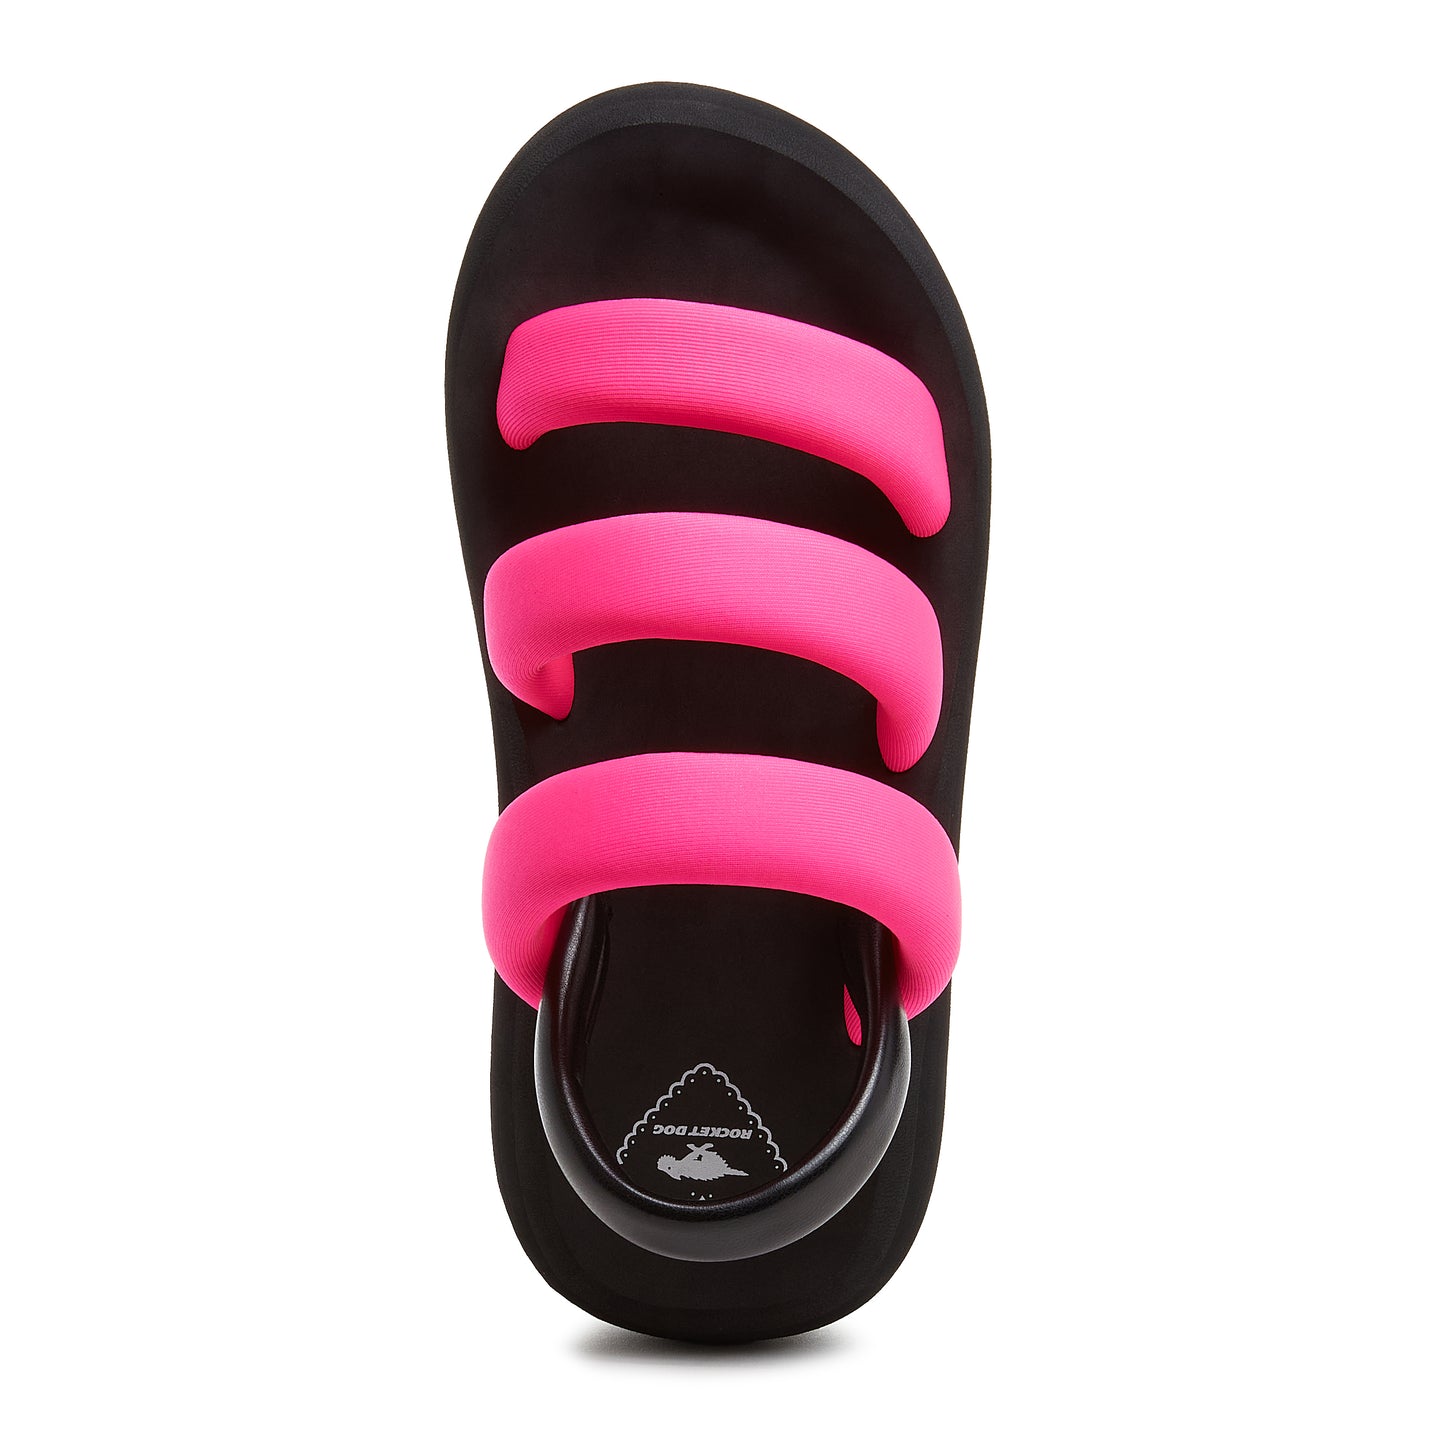 Smile Hot Pink Sandals